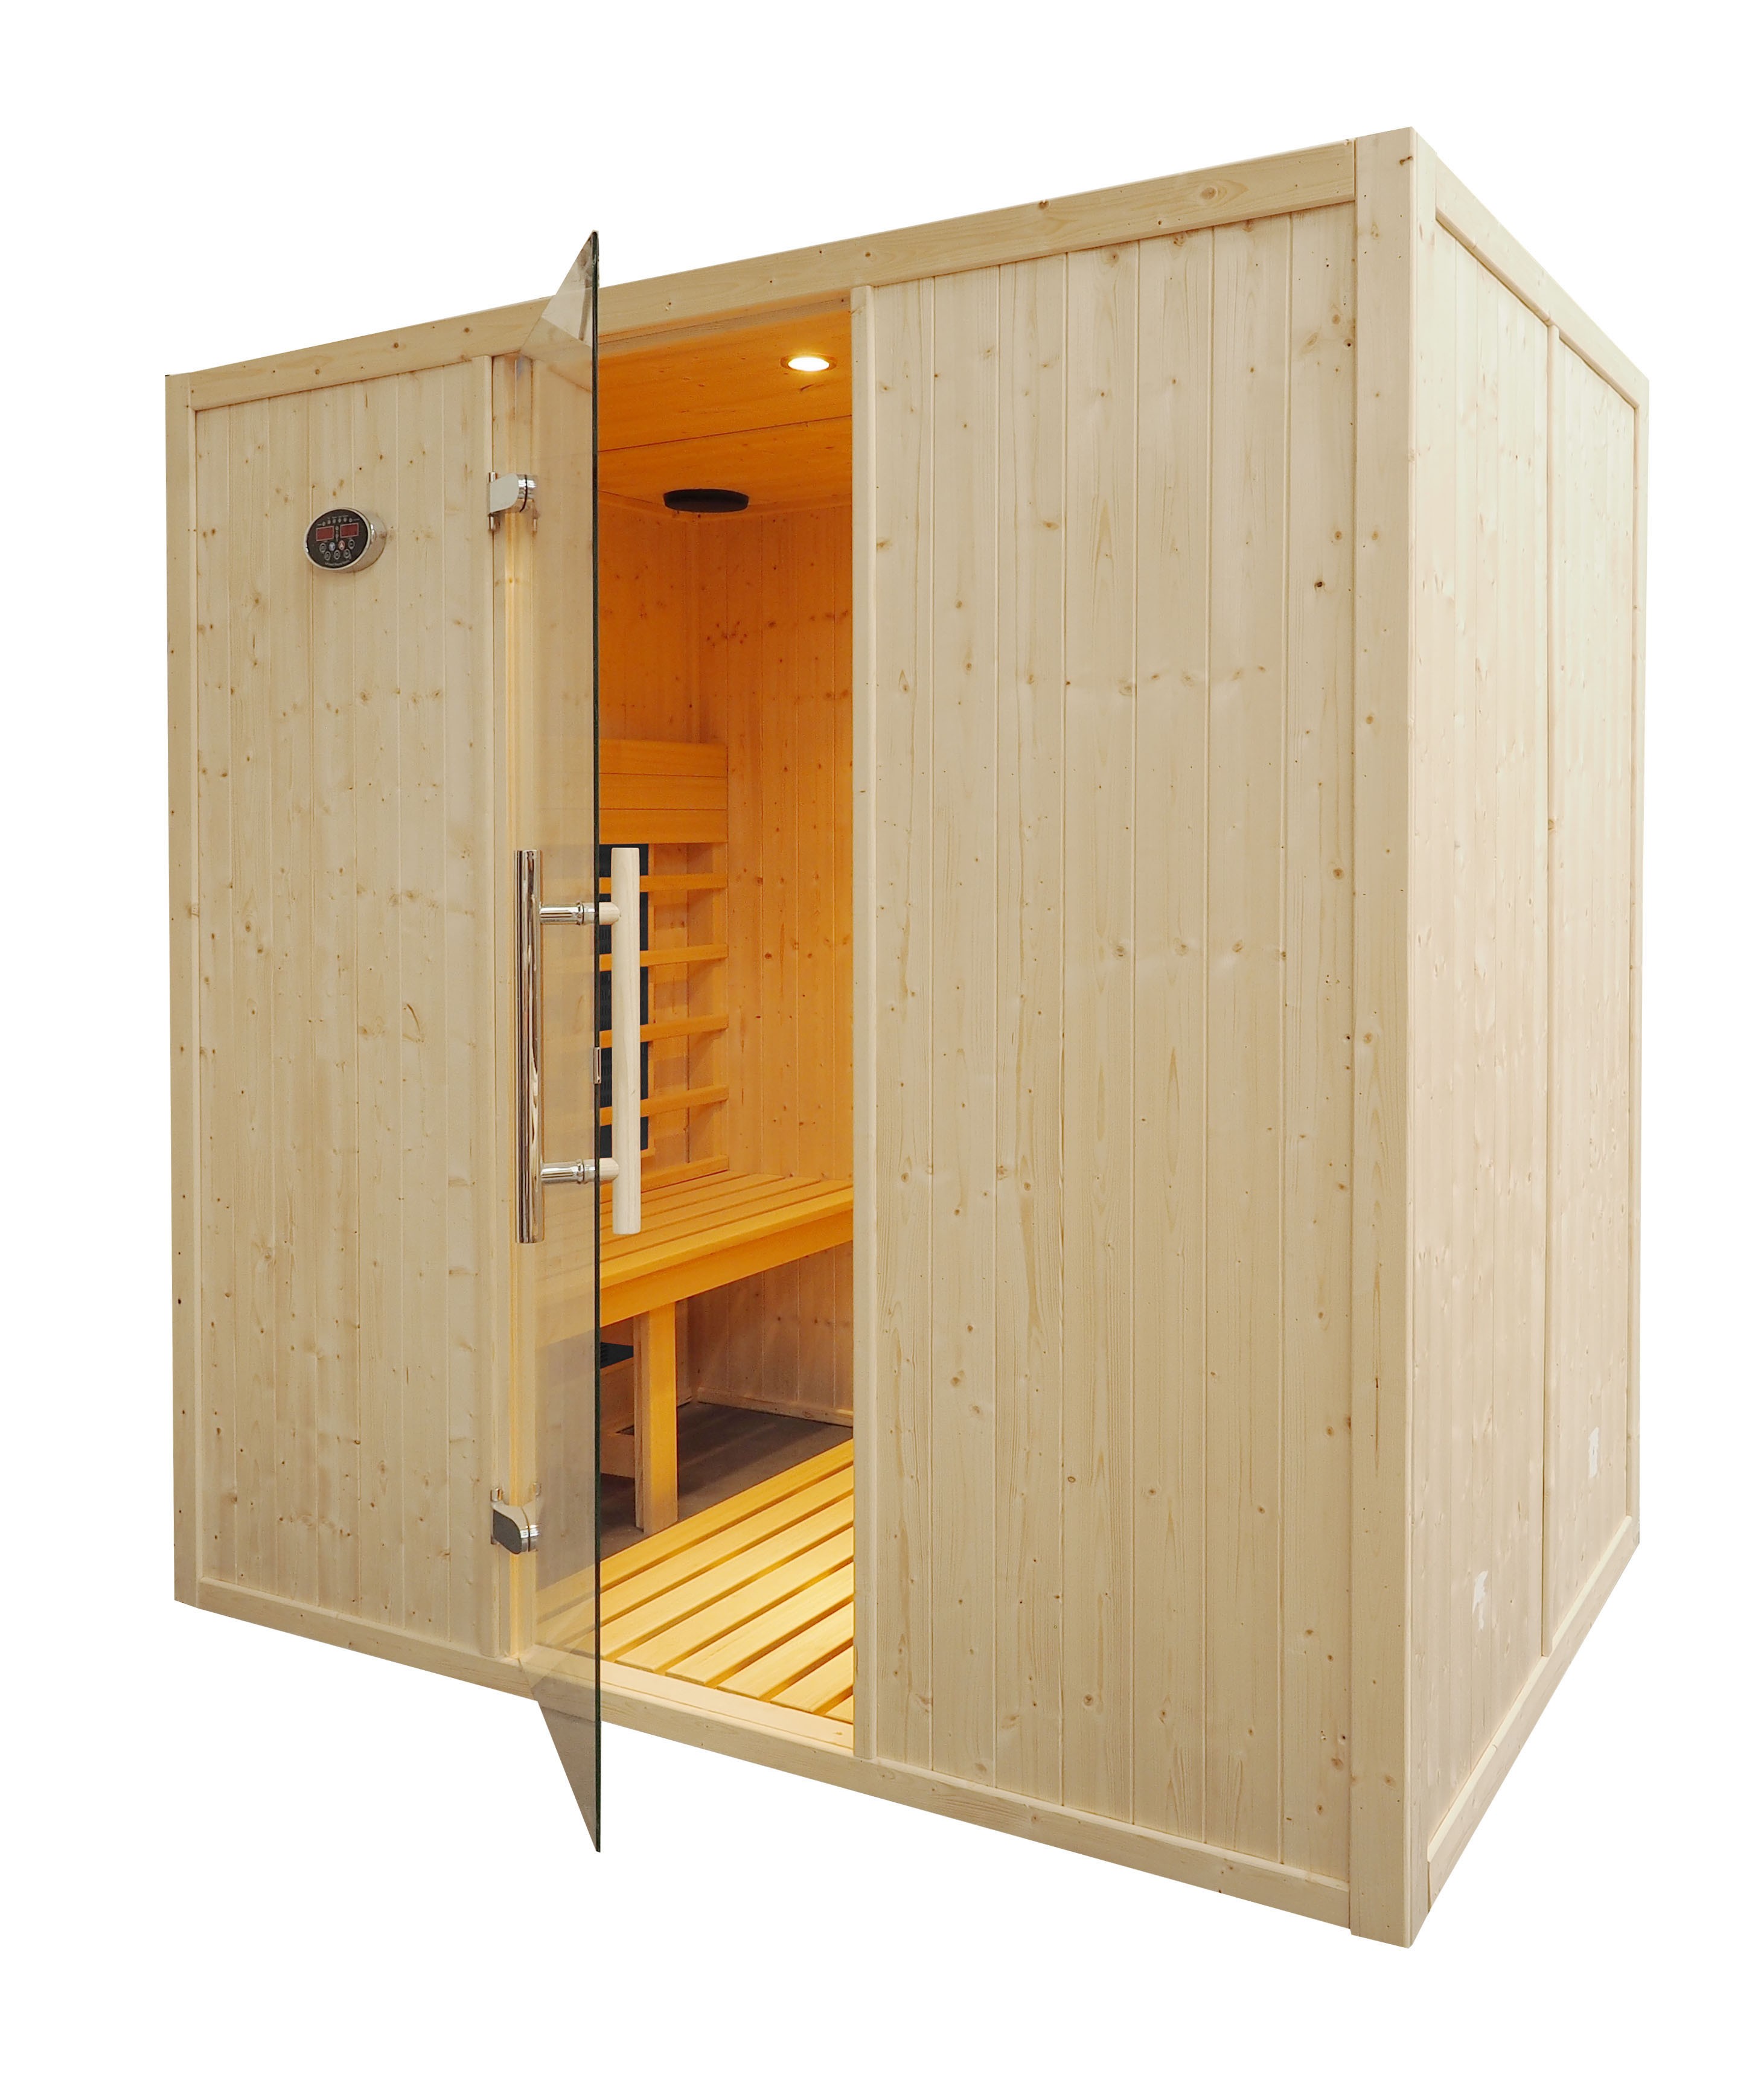 Cabina sauna de infravermelhos para 4 pessoas - IR2030 com bancos paralelos